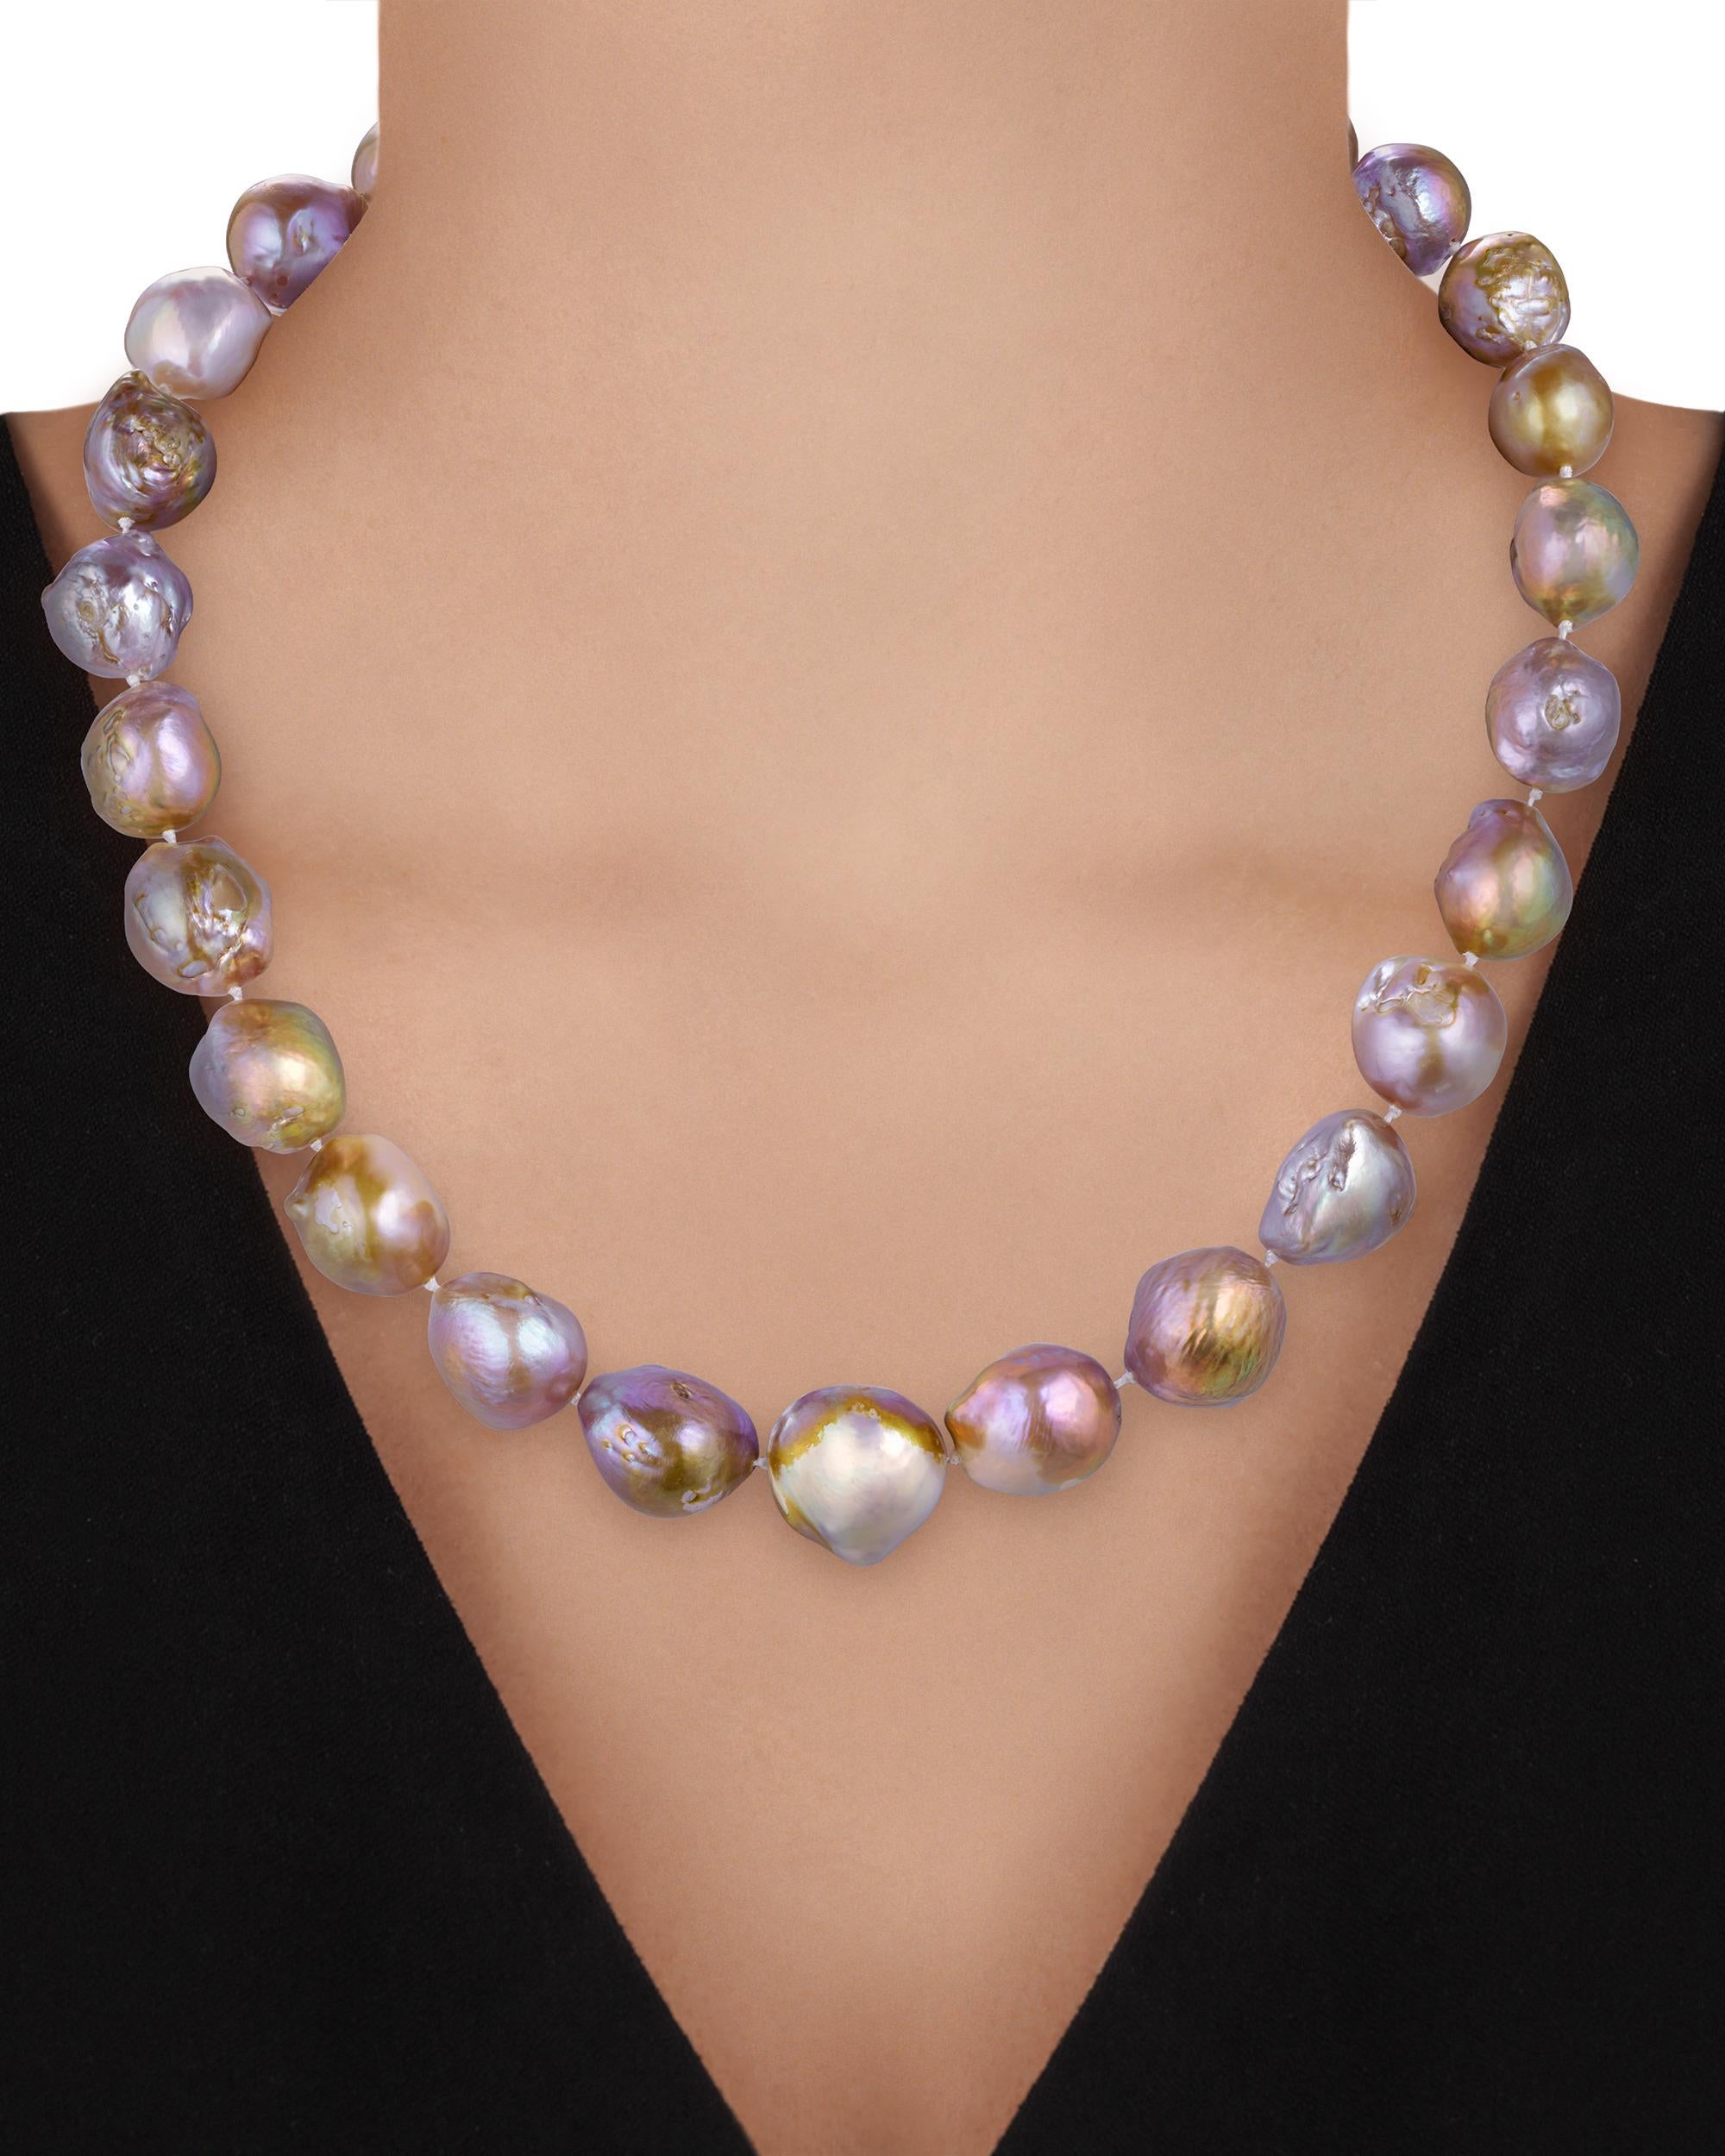 Bei dieser Halskette der amerikanischen Schmuckdesignerin Paula Crevoshay schmiegen sich mehrfarbige Perlen anmutig um den Hals. Diese schillernden Barockperlen werden wegen ihres fesselnden Feuers und Farbspiels auch 